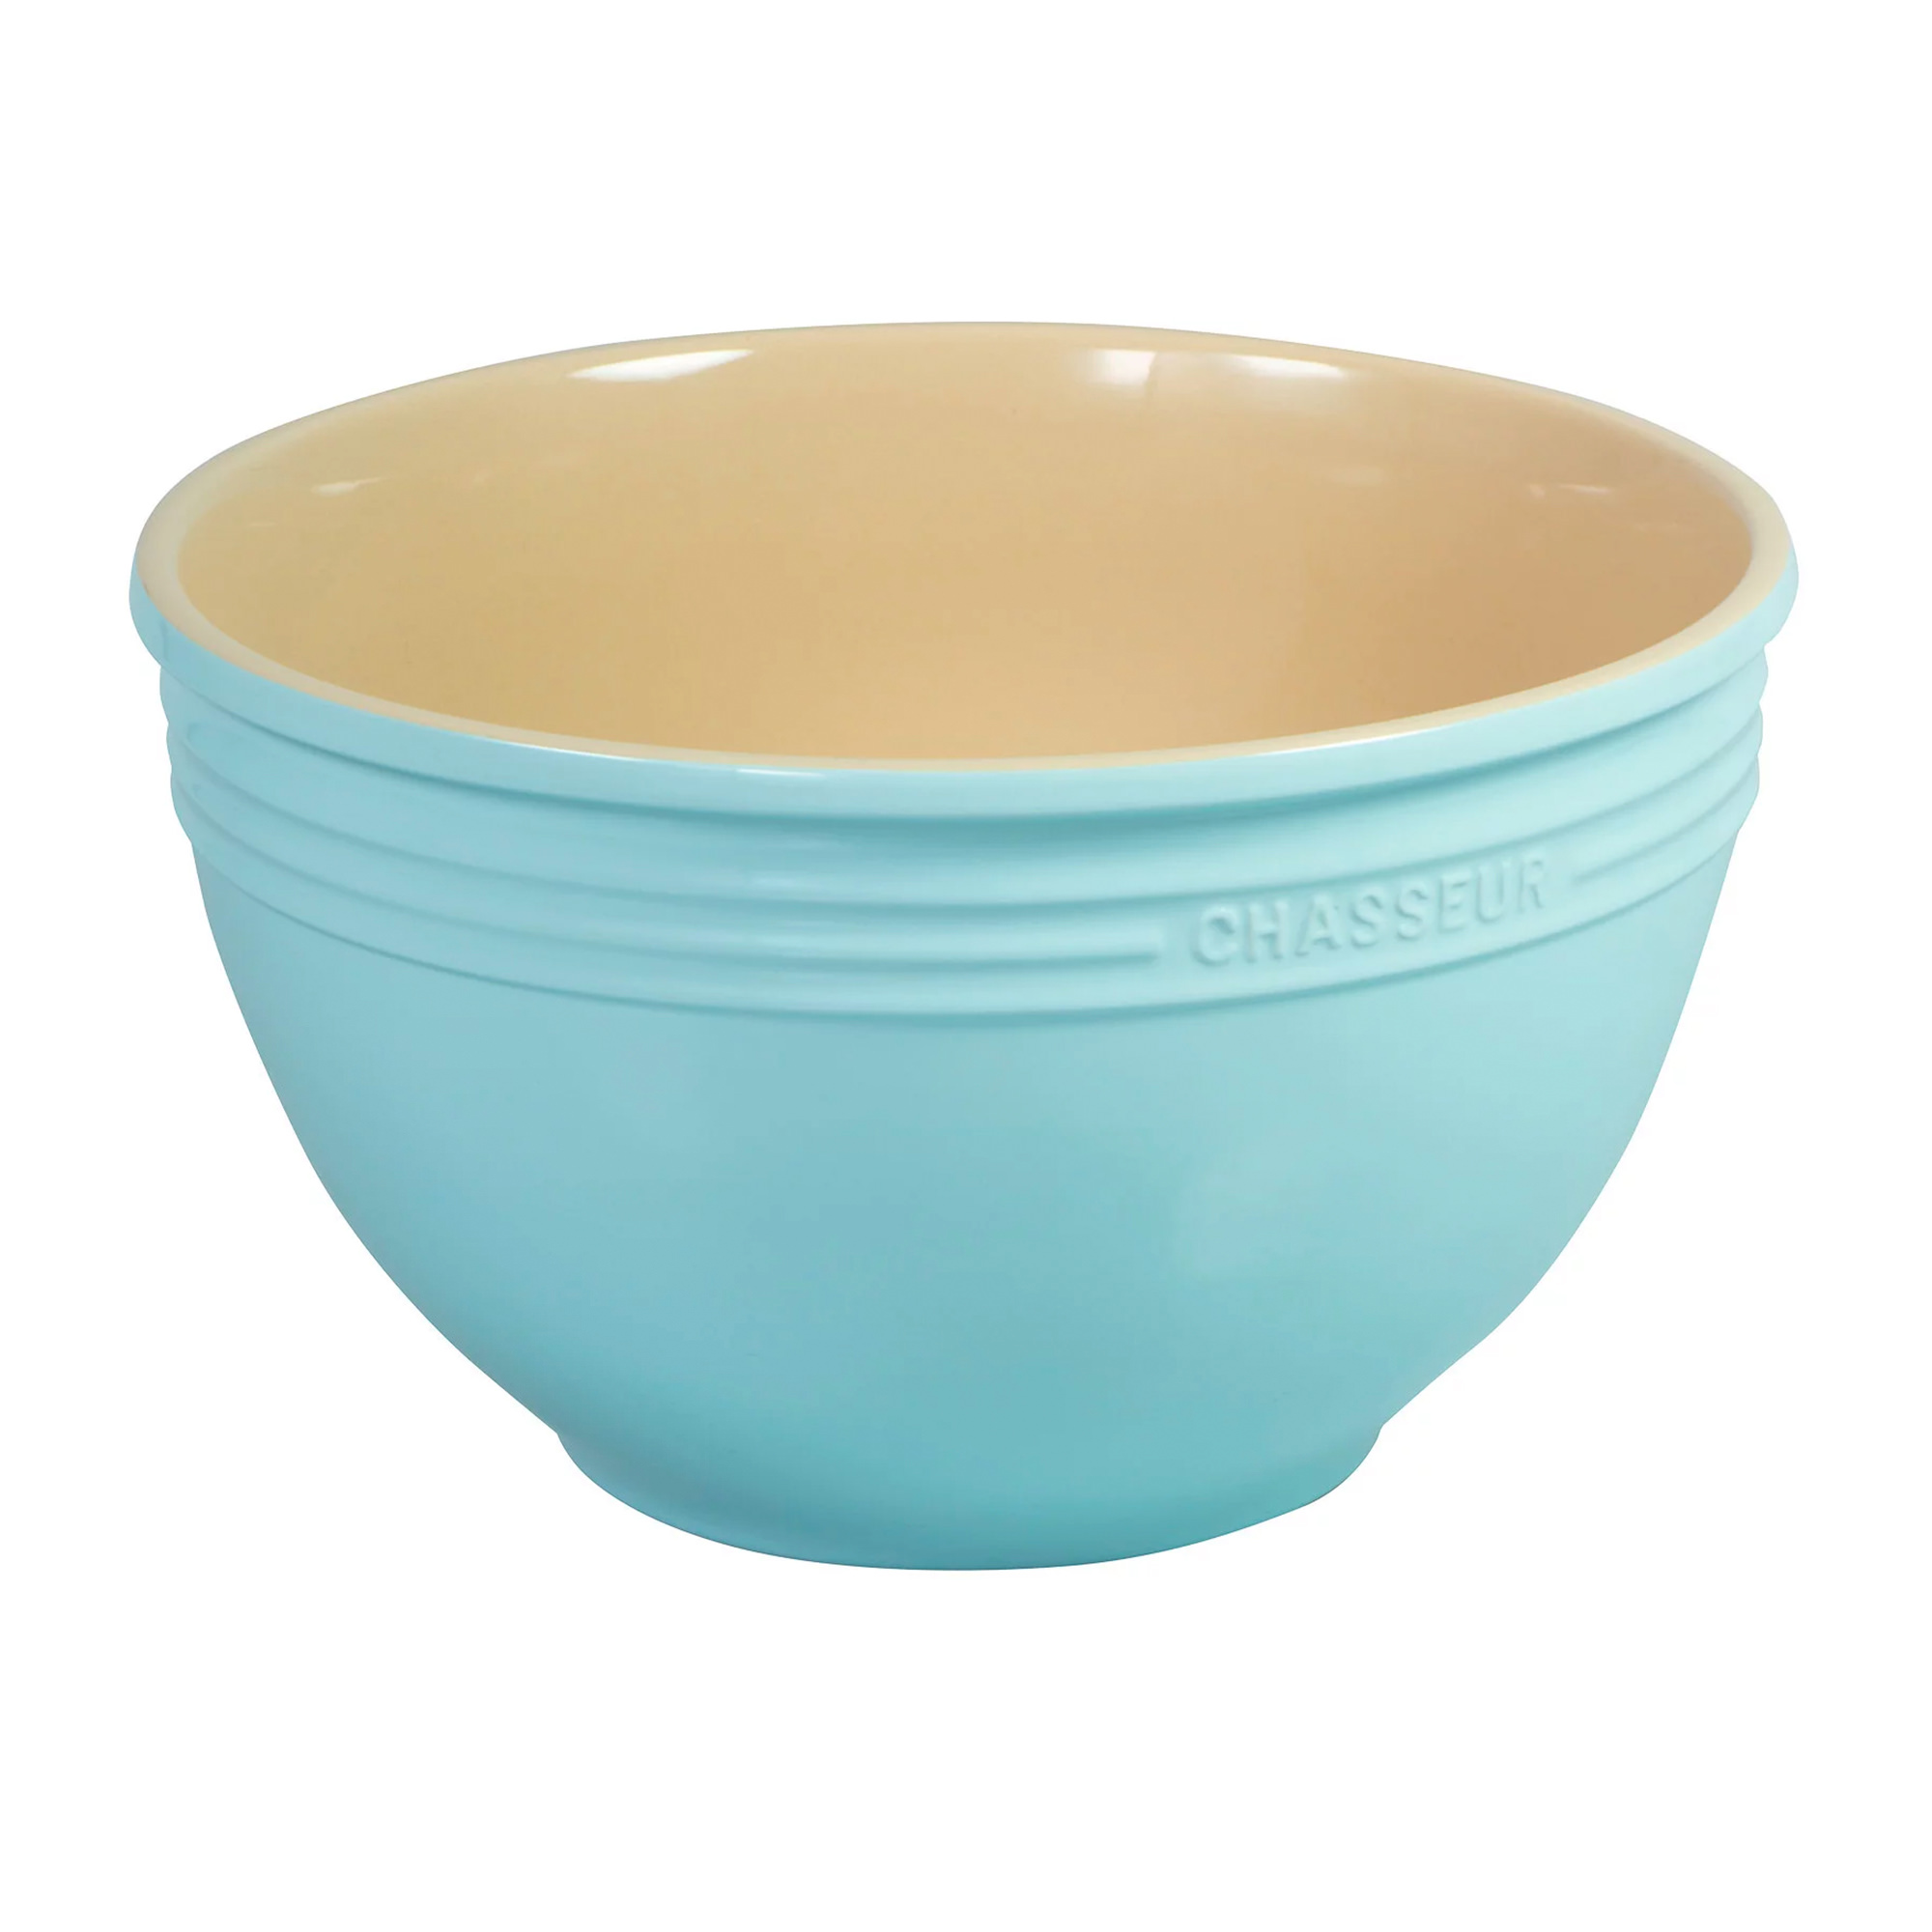 Chasseur La Cuisson Mixing Bowl 24cm - 3.5L Duck Egg Blue Image 1